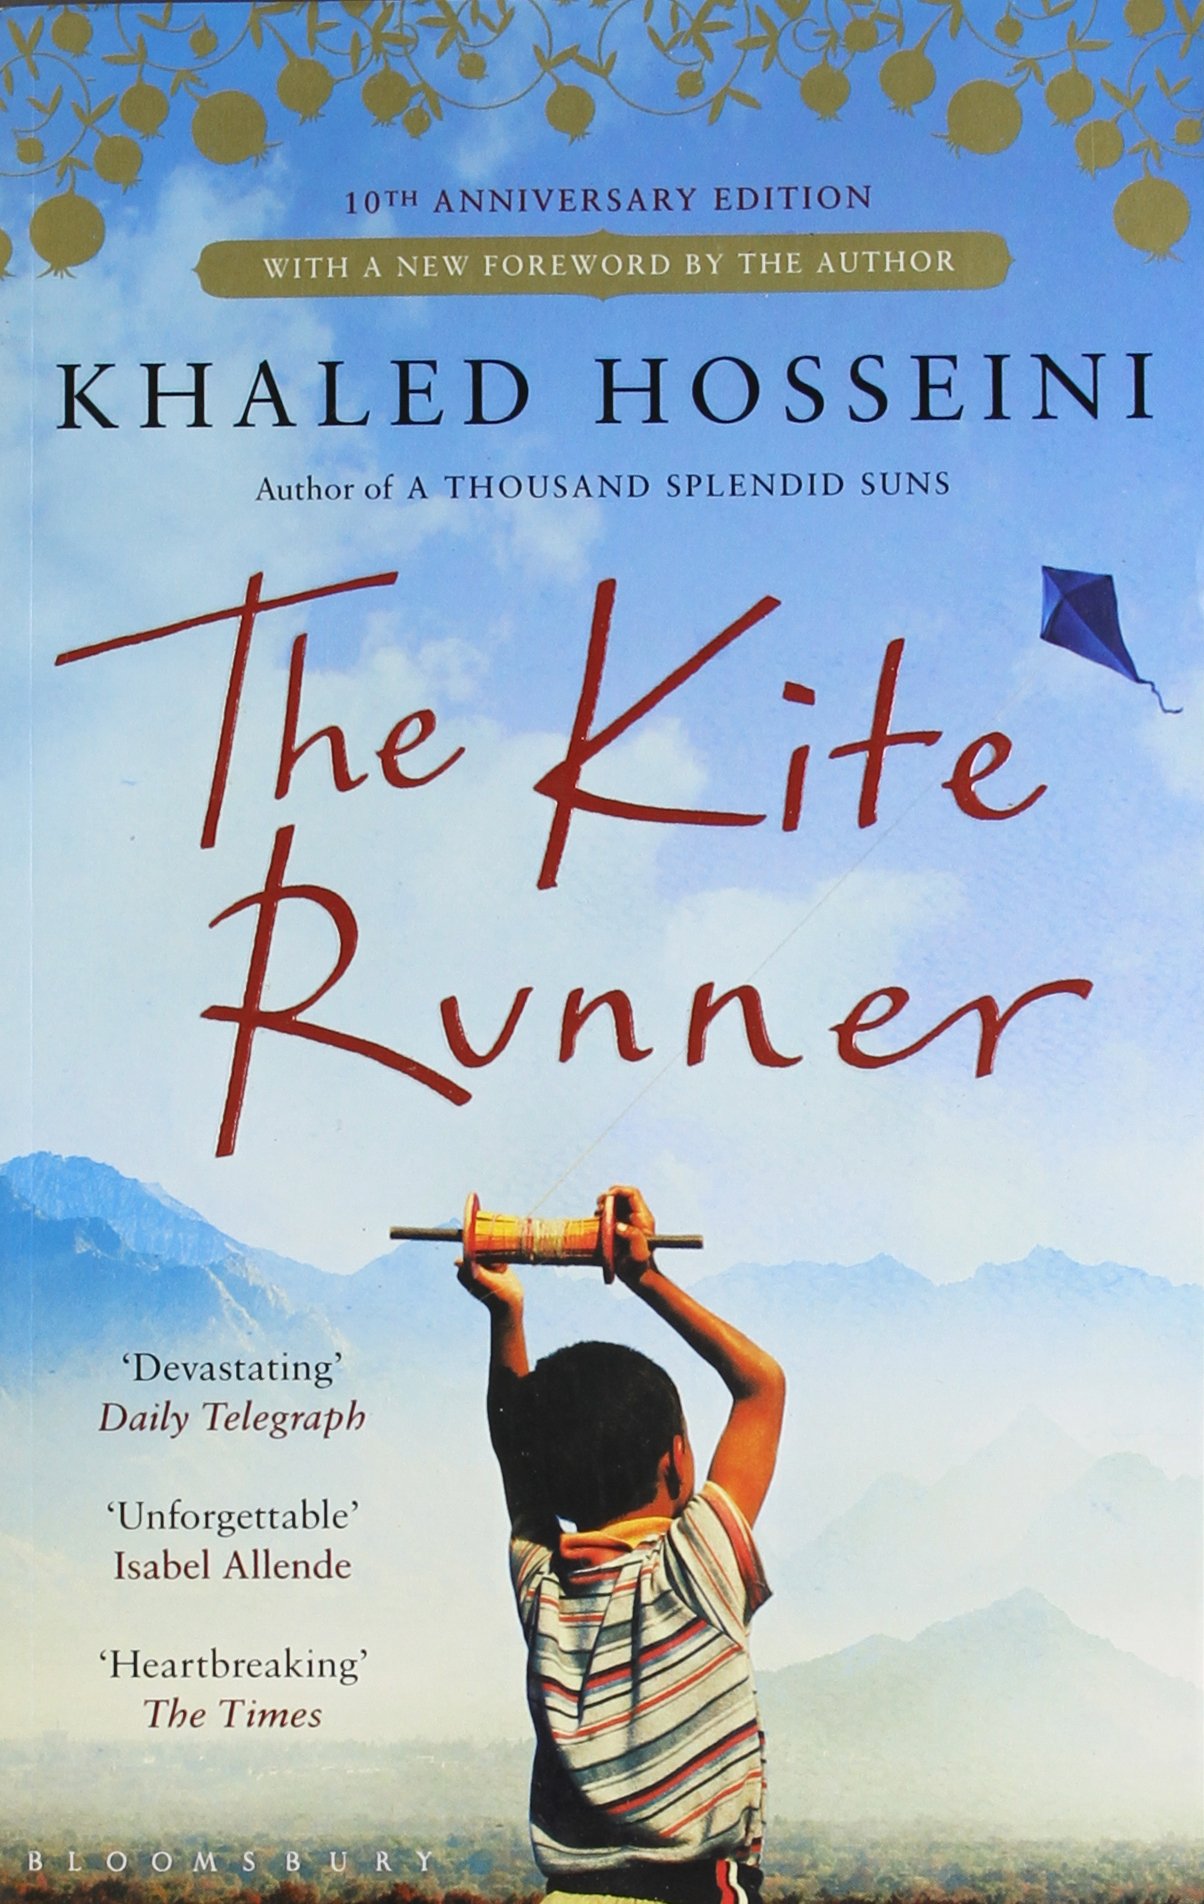 the kite runner movie vs book essay